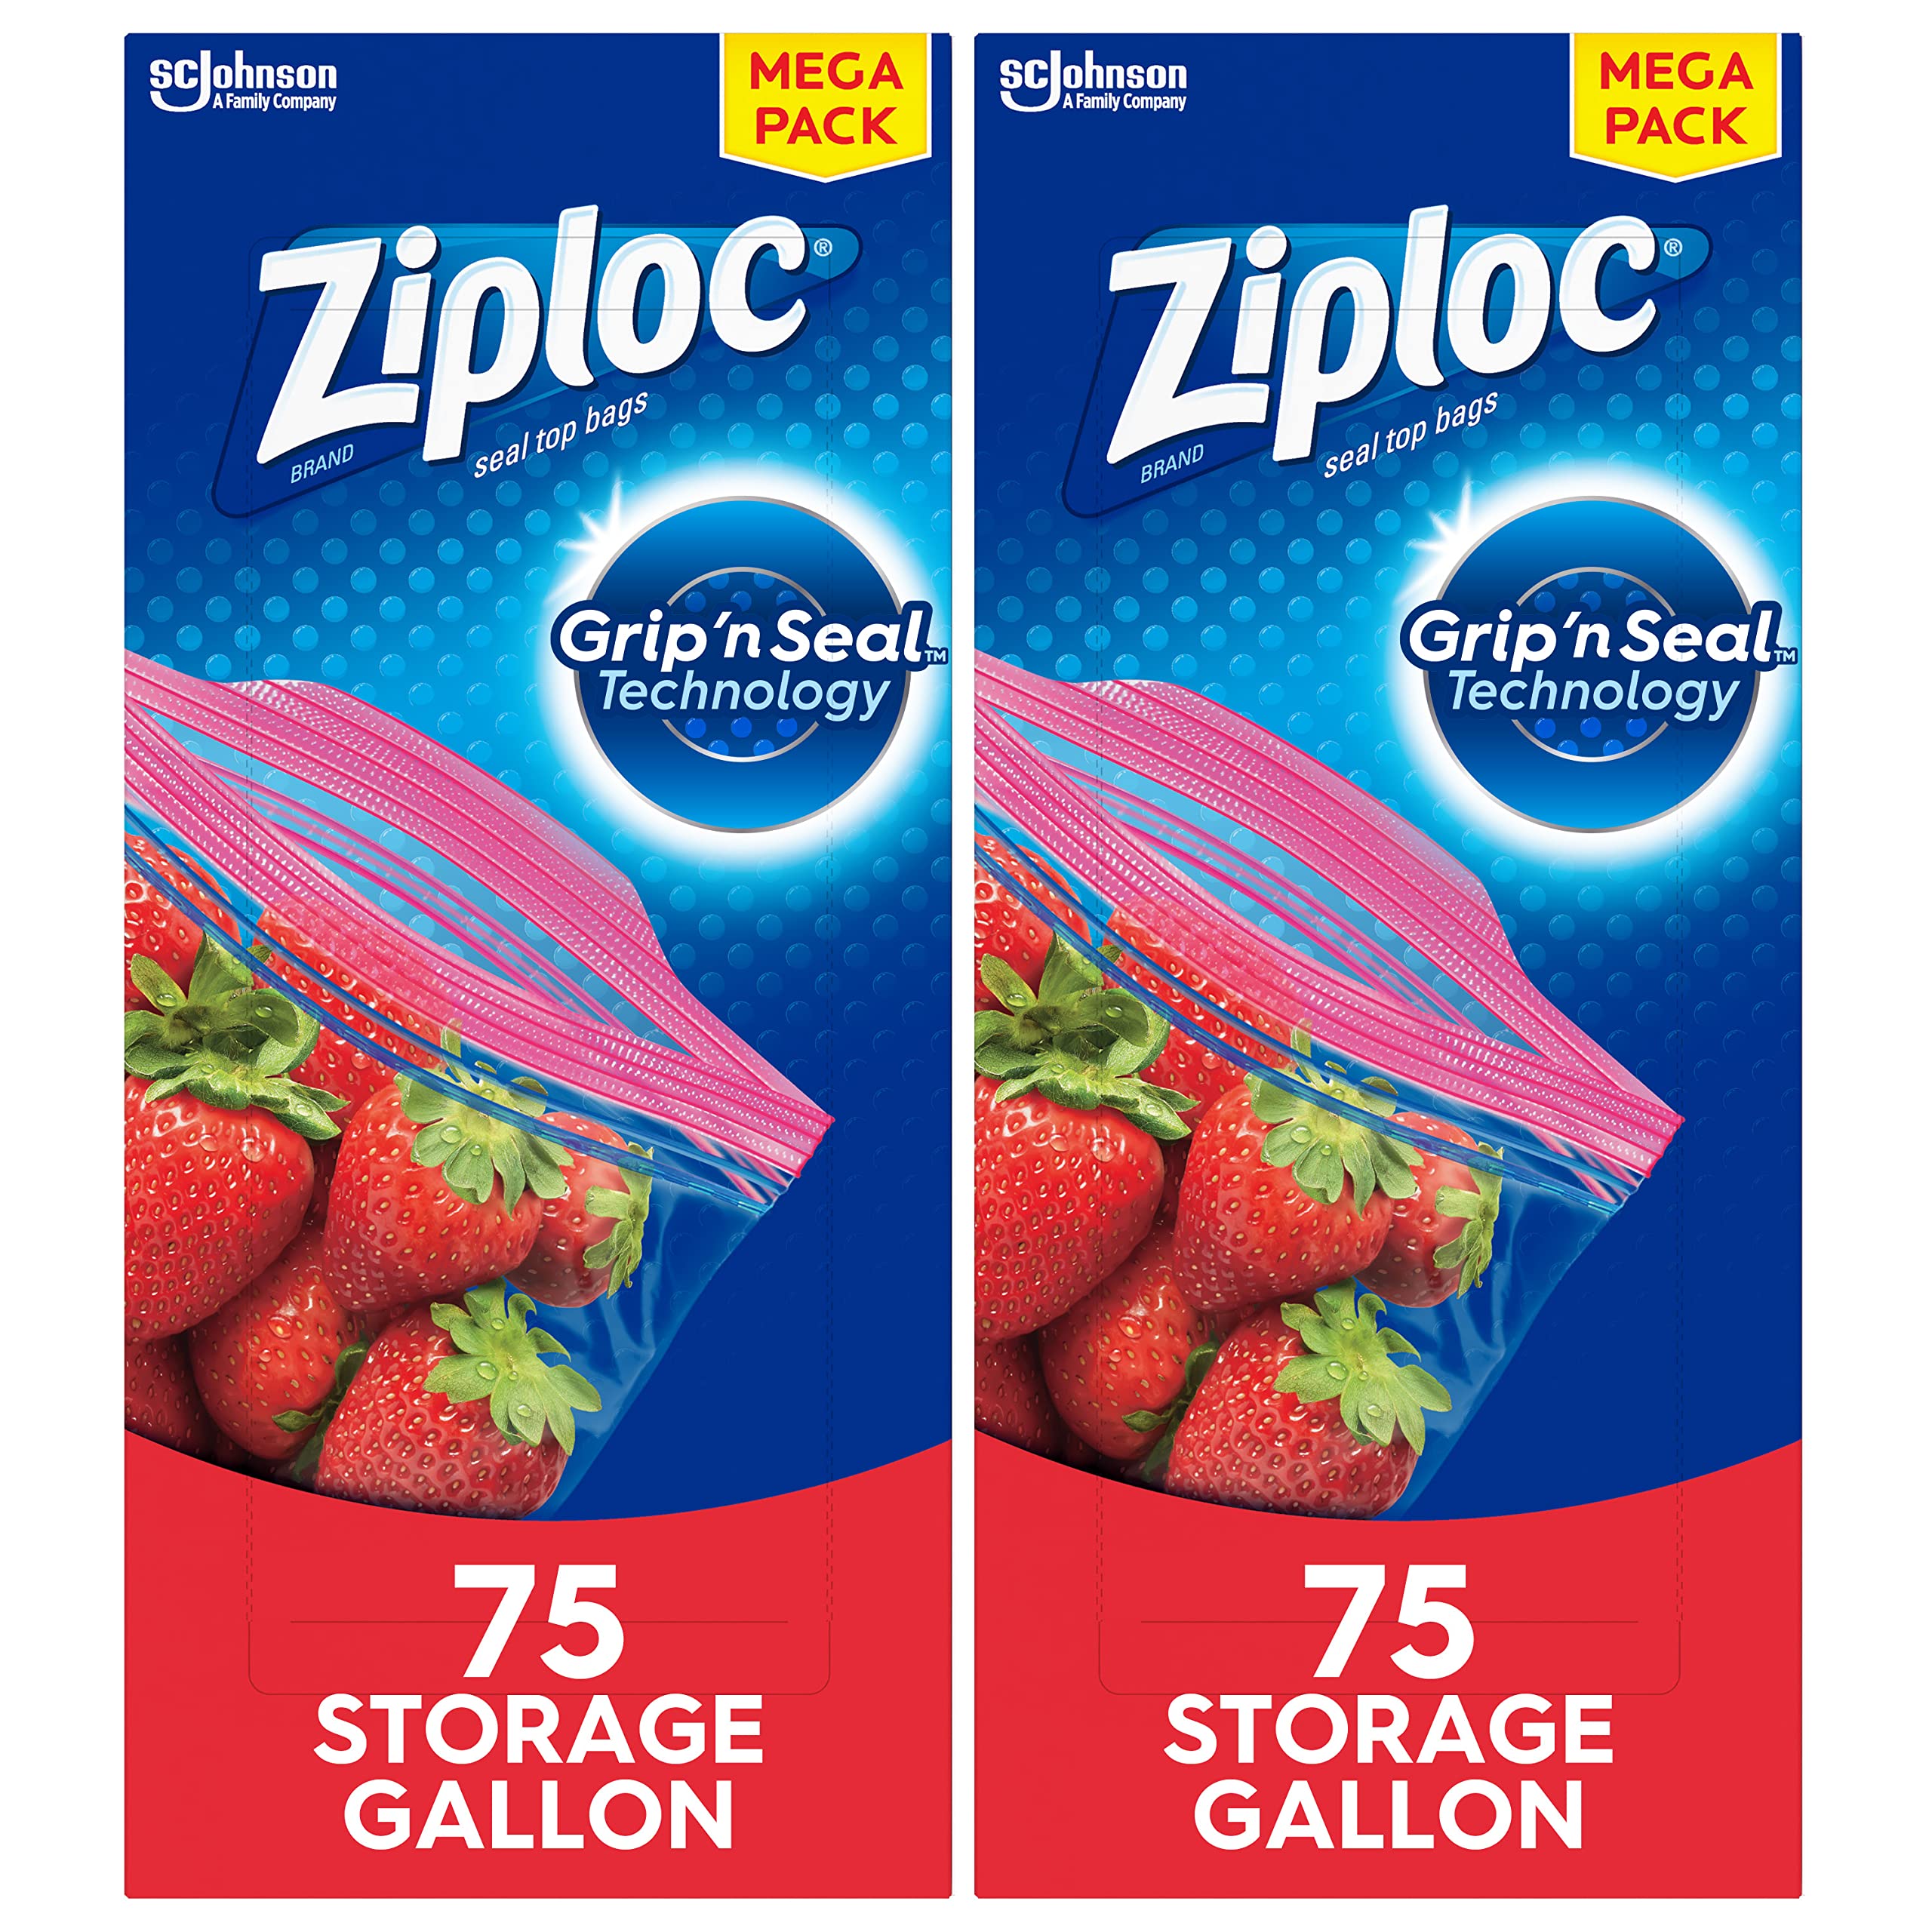 Ziploc Half Gallon Marinade Food Storage Bags for Meal Prep, Grip 'n Seal